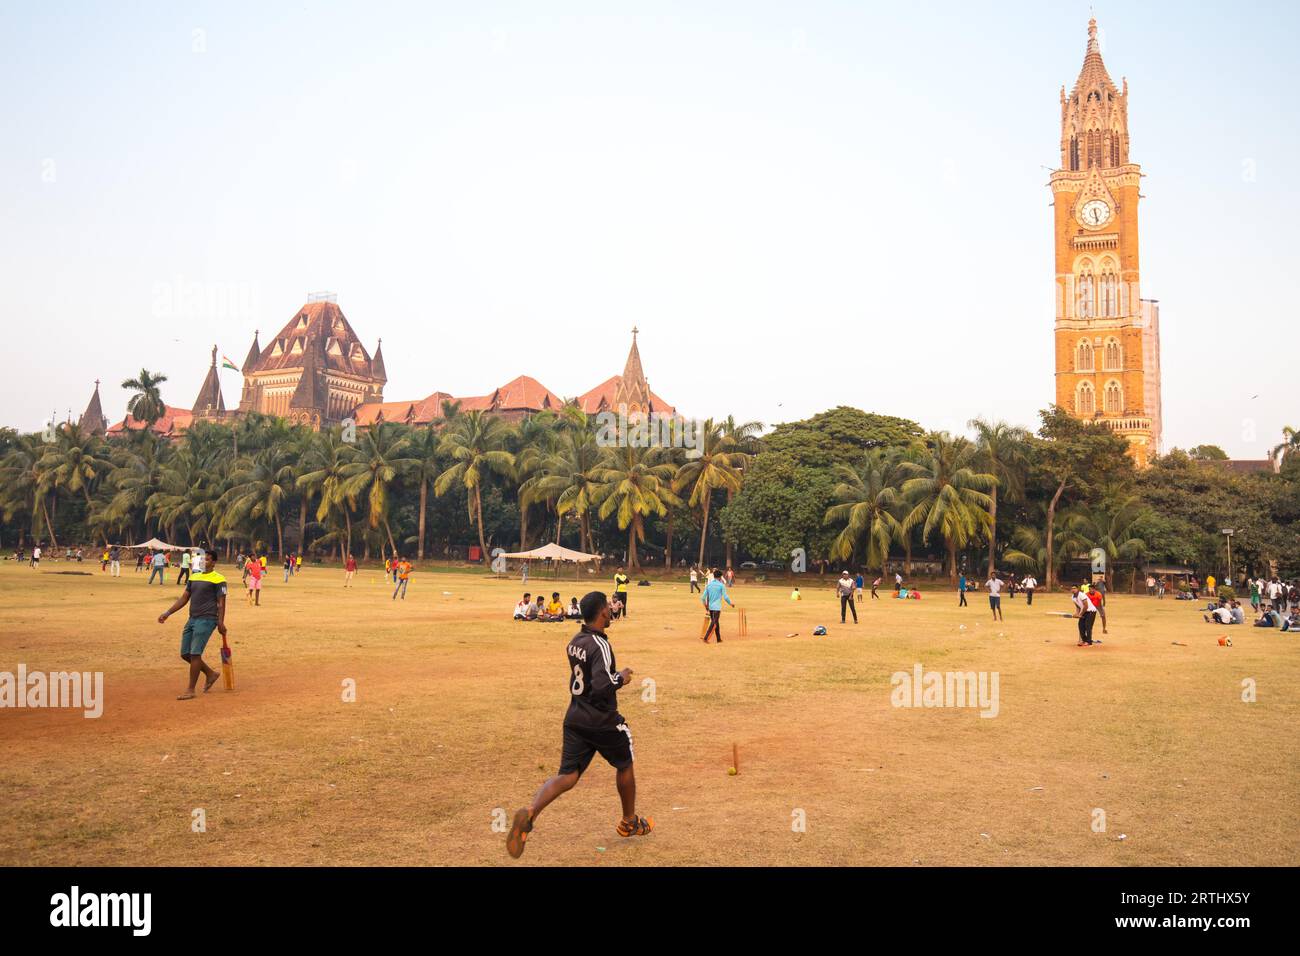 MUMBAI, INDE, novembre 5 2017 : les habitants jouent au cricket sur le célèbre terrain de loisirs Oval Maidan par une chaude journée d'été à Mumbai, en Inde Banque D'Images